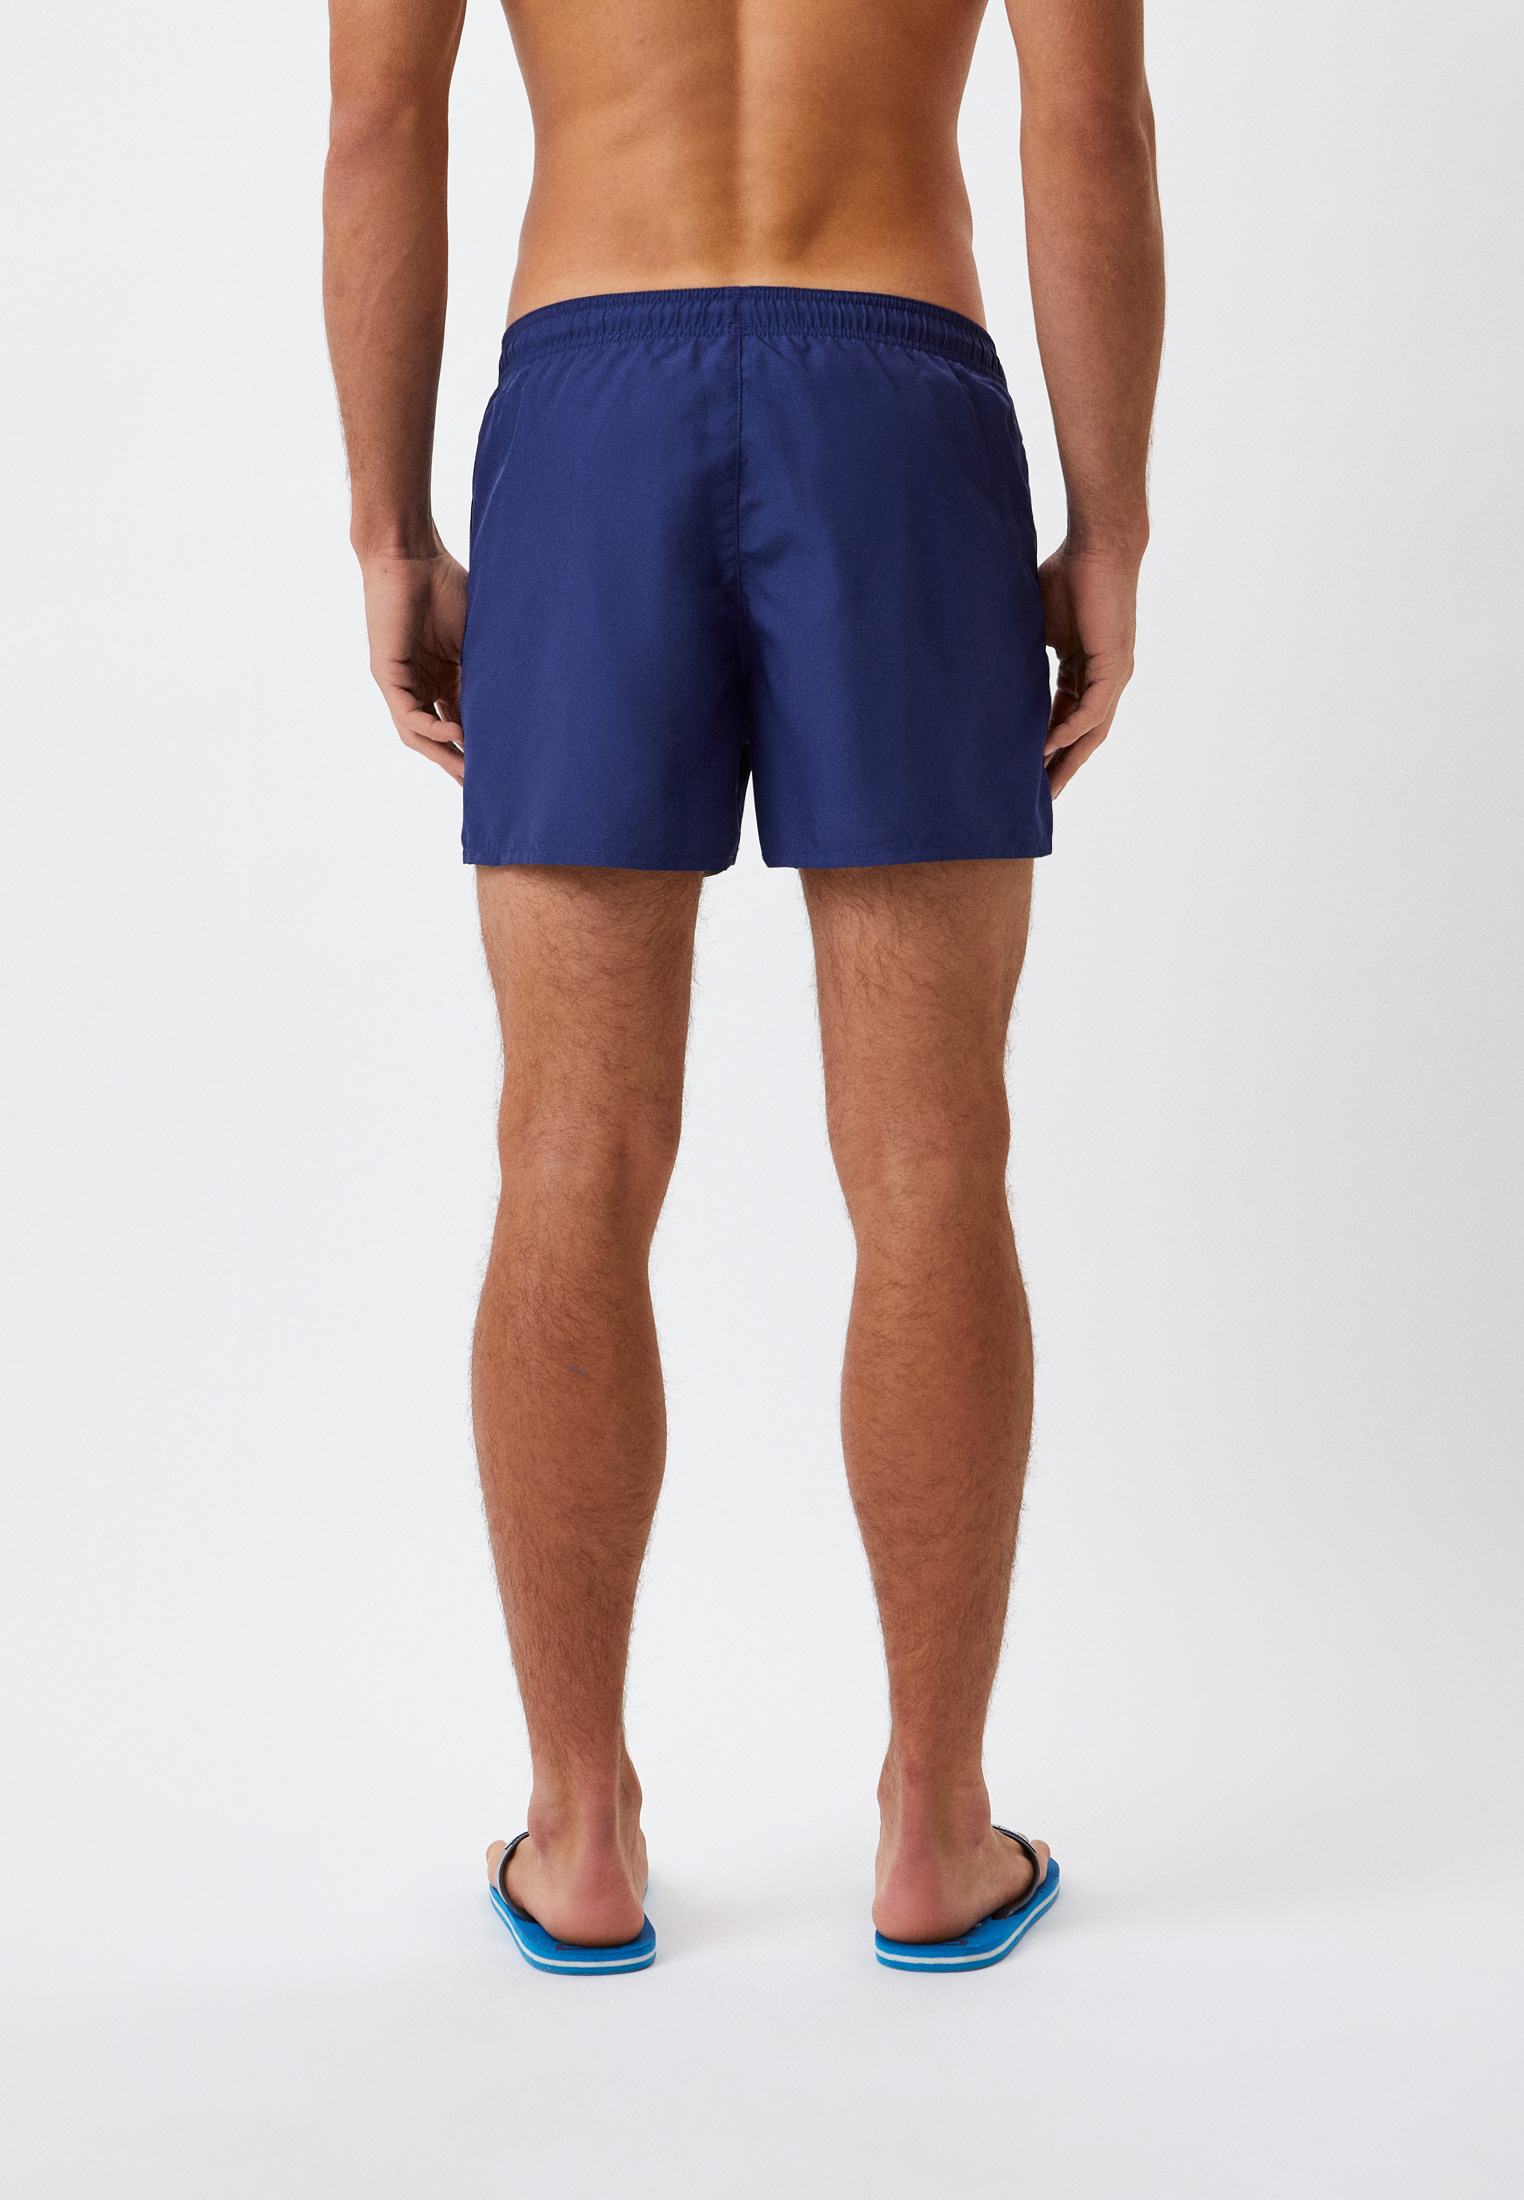 Мужские шорты для плавания Emporio Armani (Эмпорио Армани) 211752 2r438: изображение 2